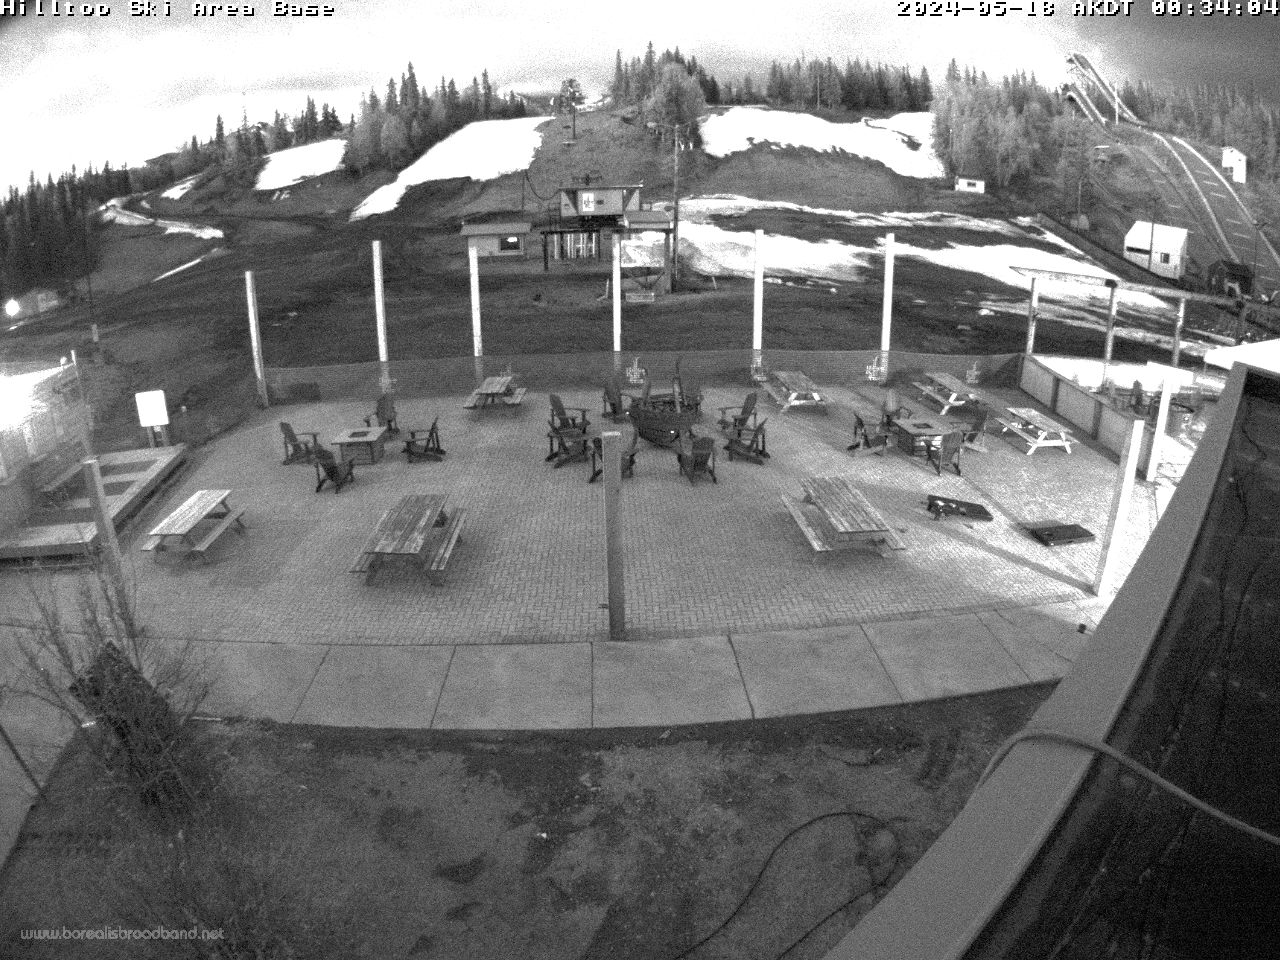 Alaska Hilltop Ski Area Ski Resort webcam